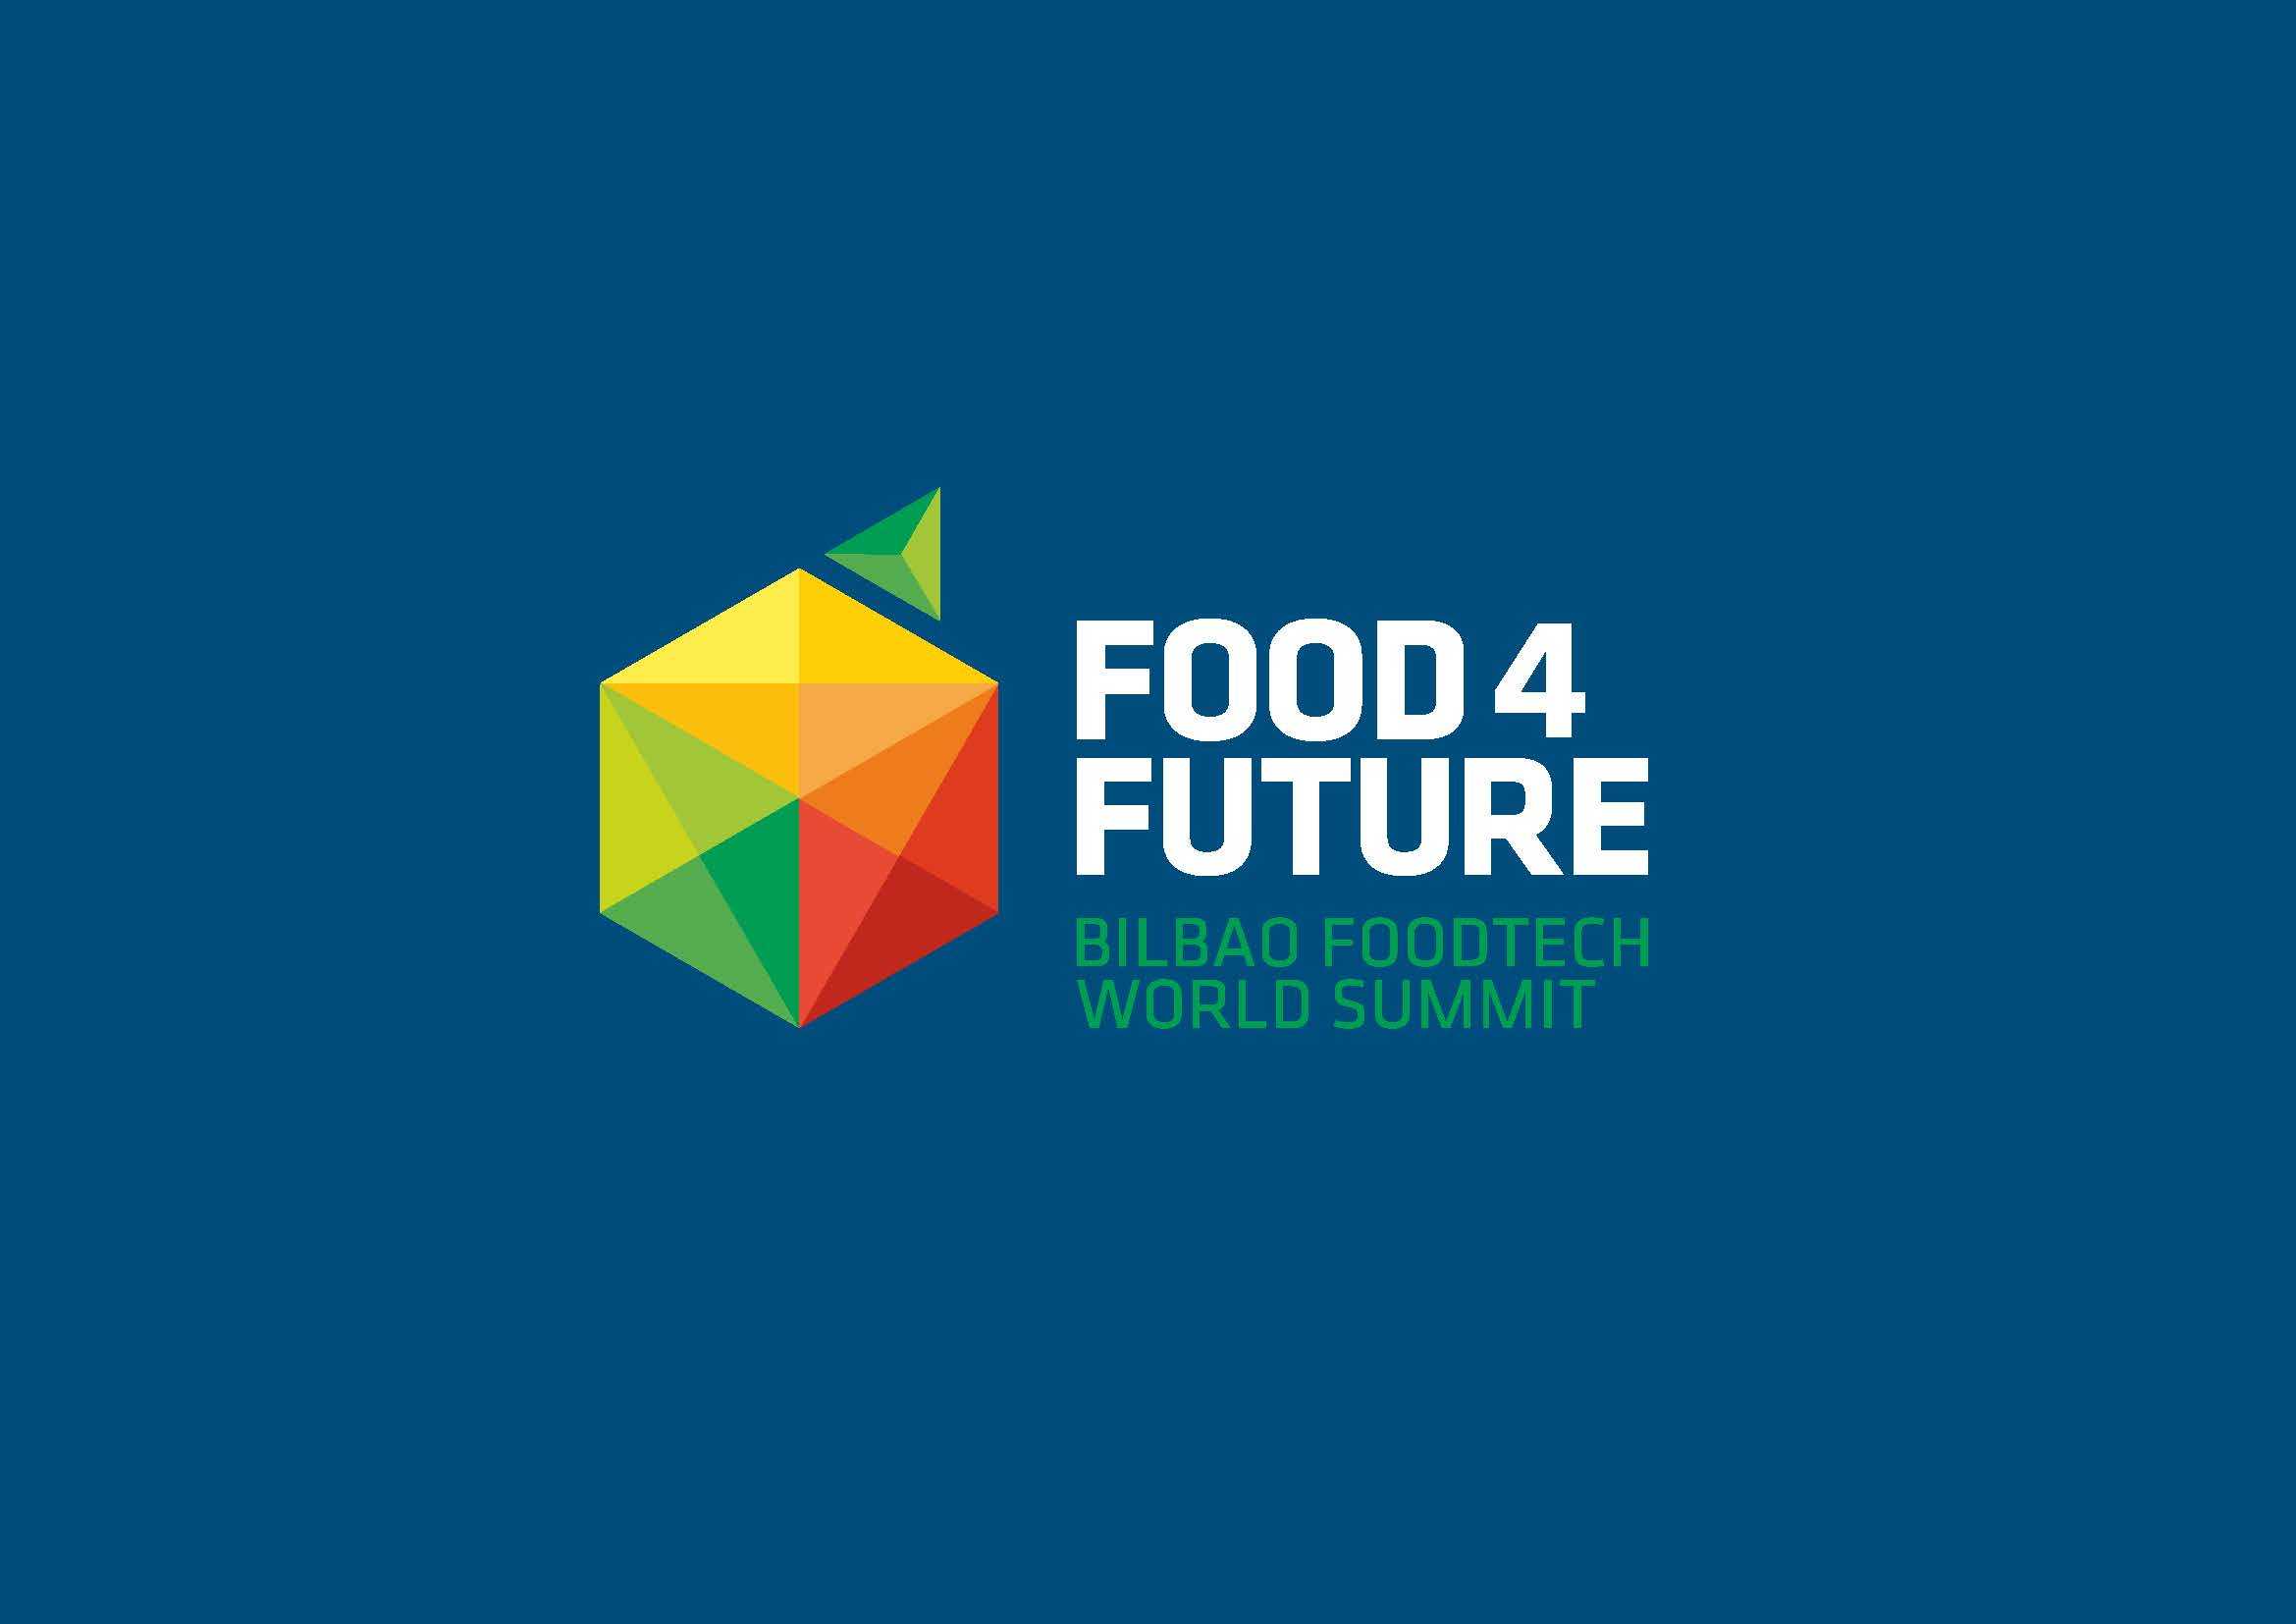 Food 4 Future Event